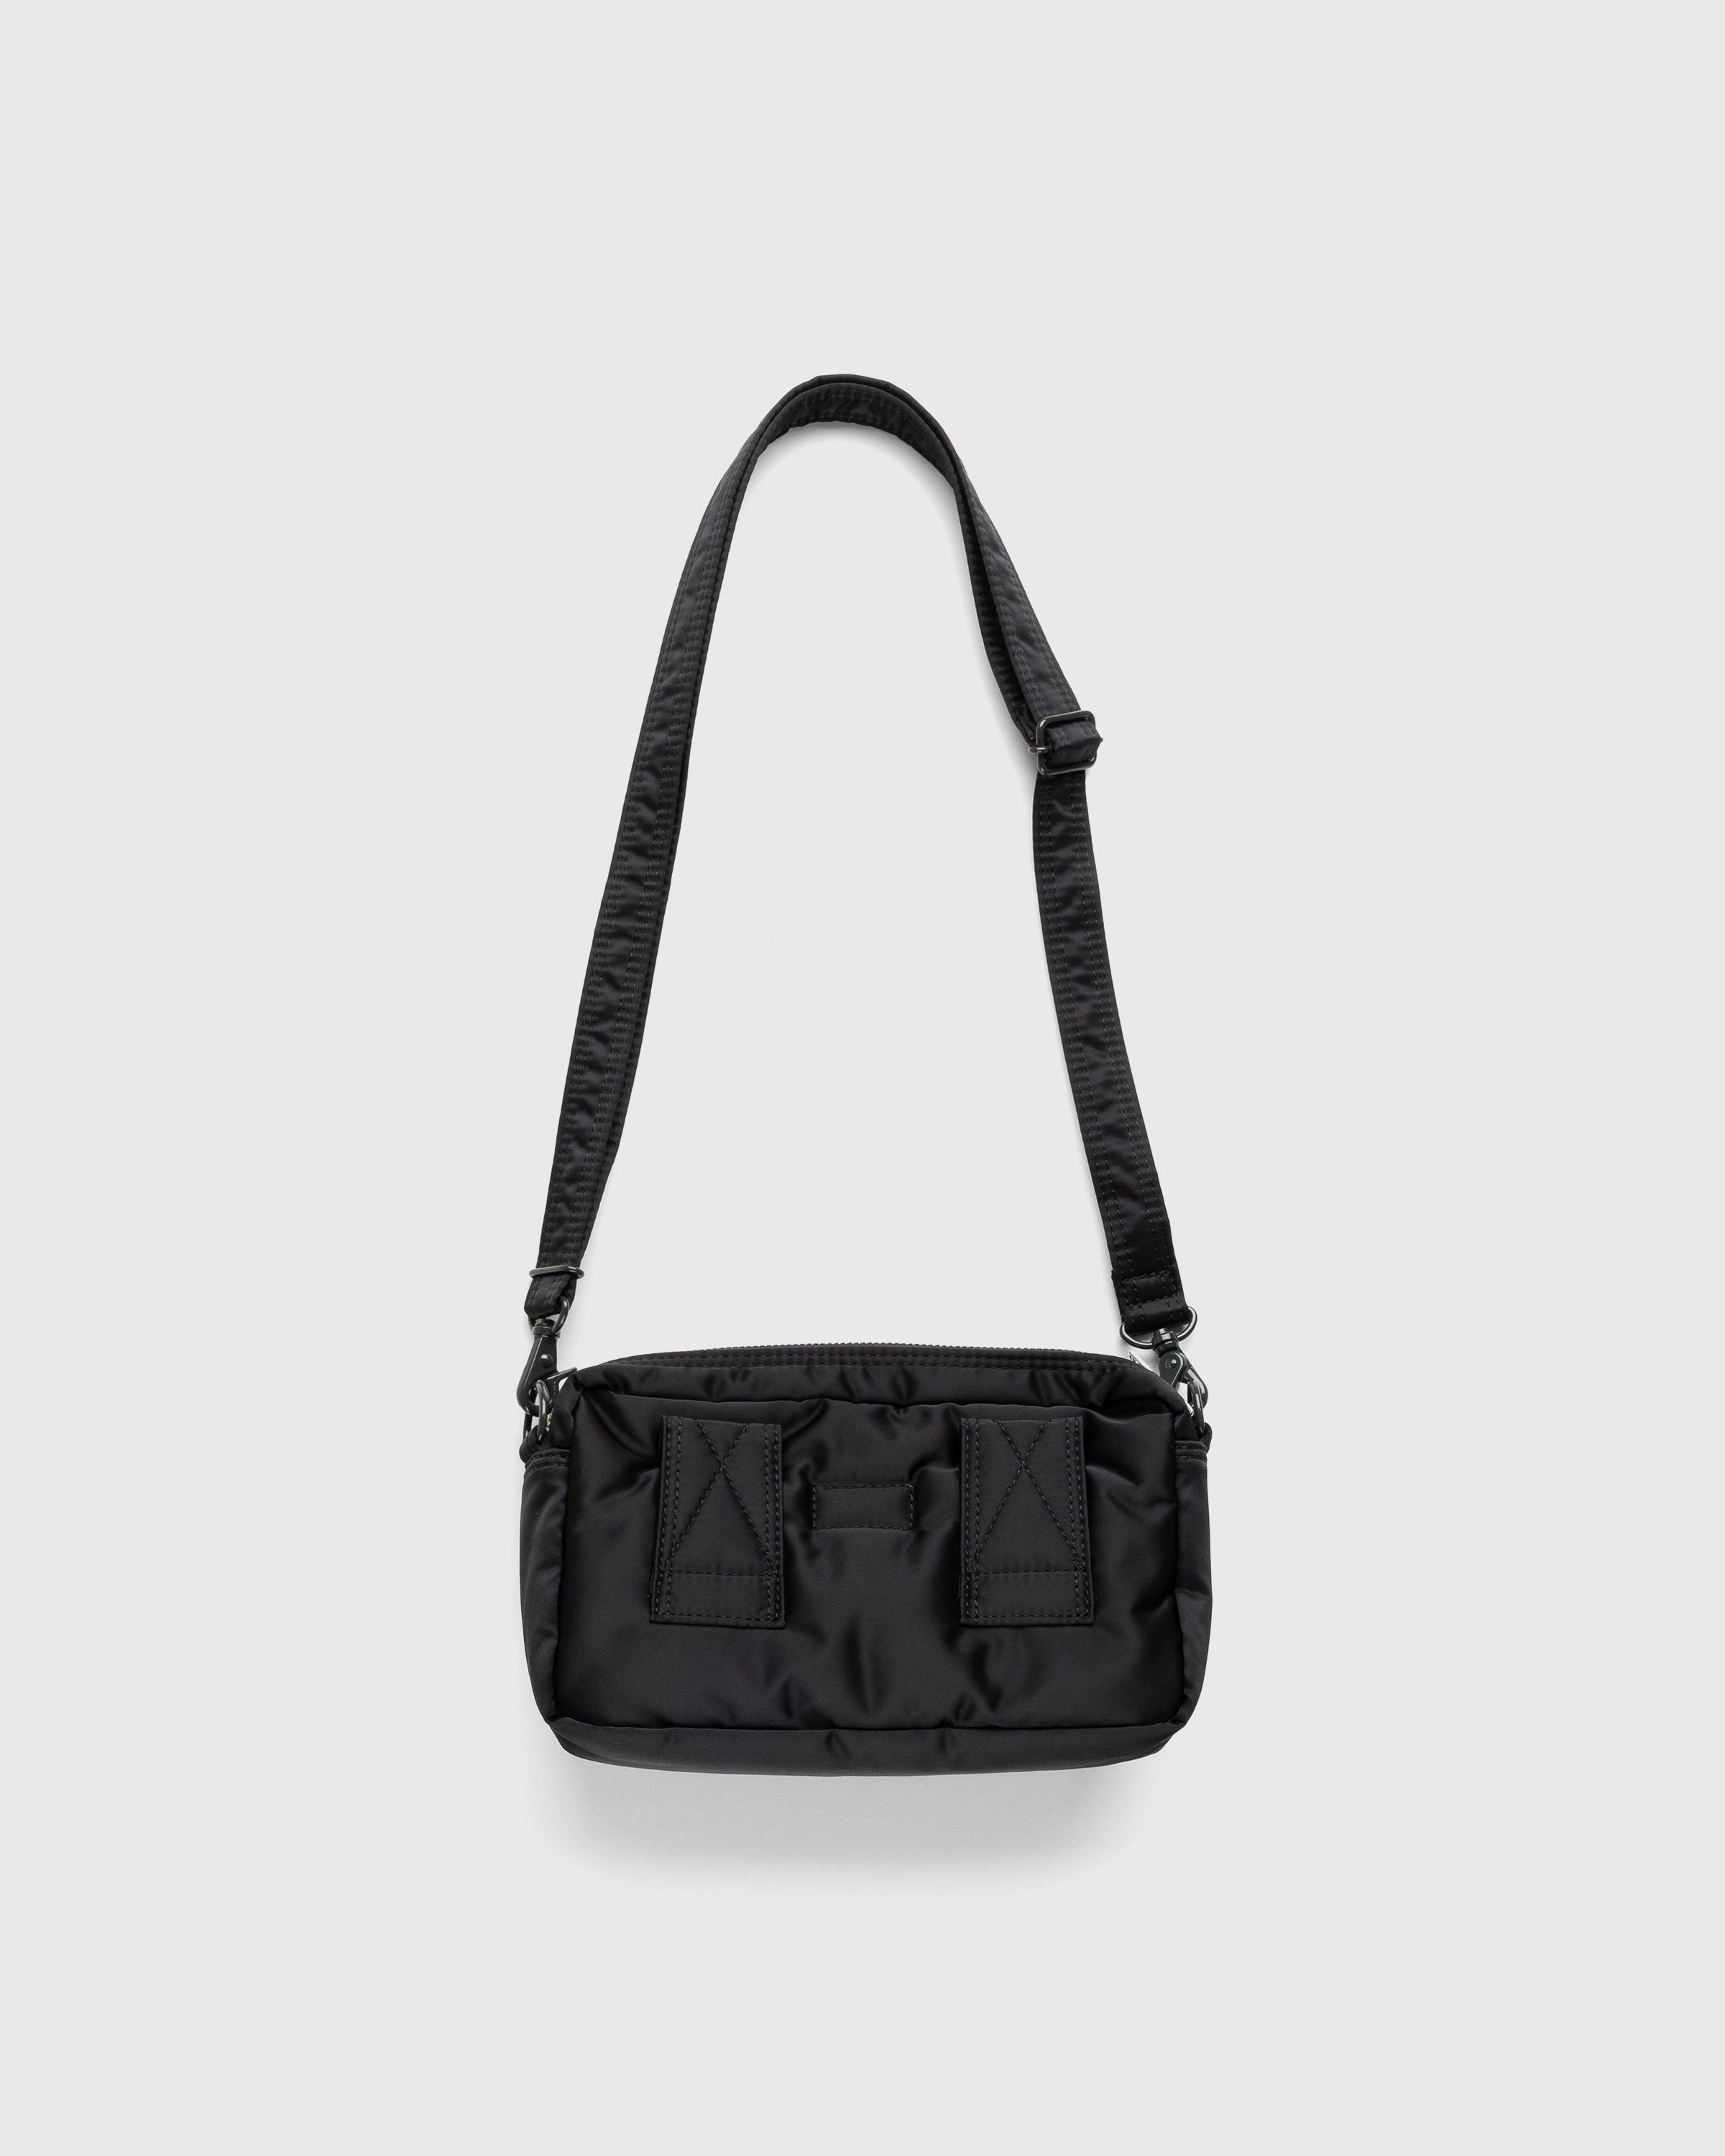 Porter-Yoshida & Co. – Tanker Shoulder Bag Black | Highsnobiety Shop